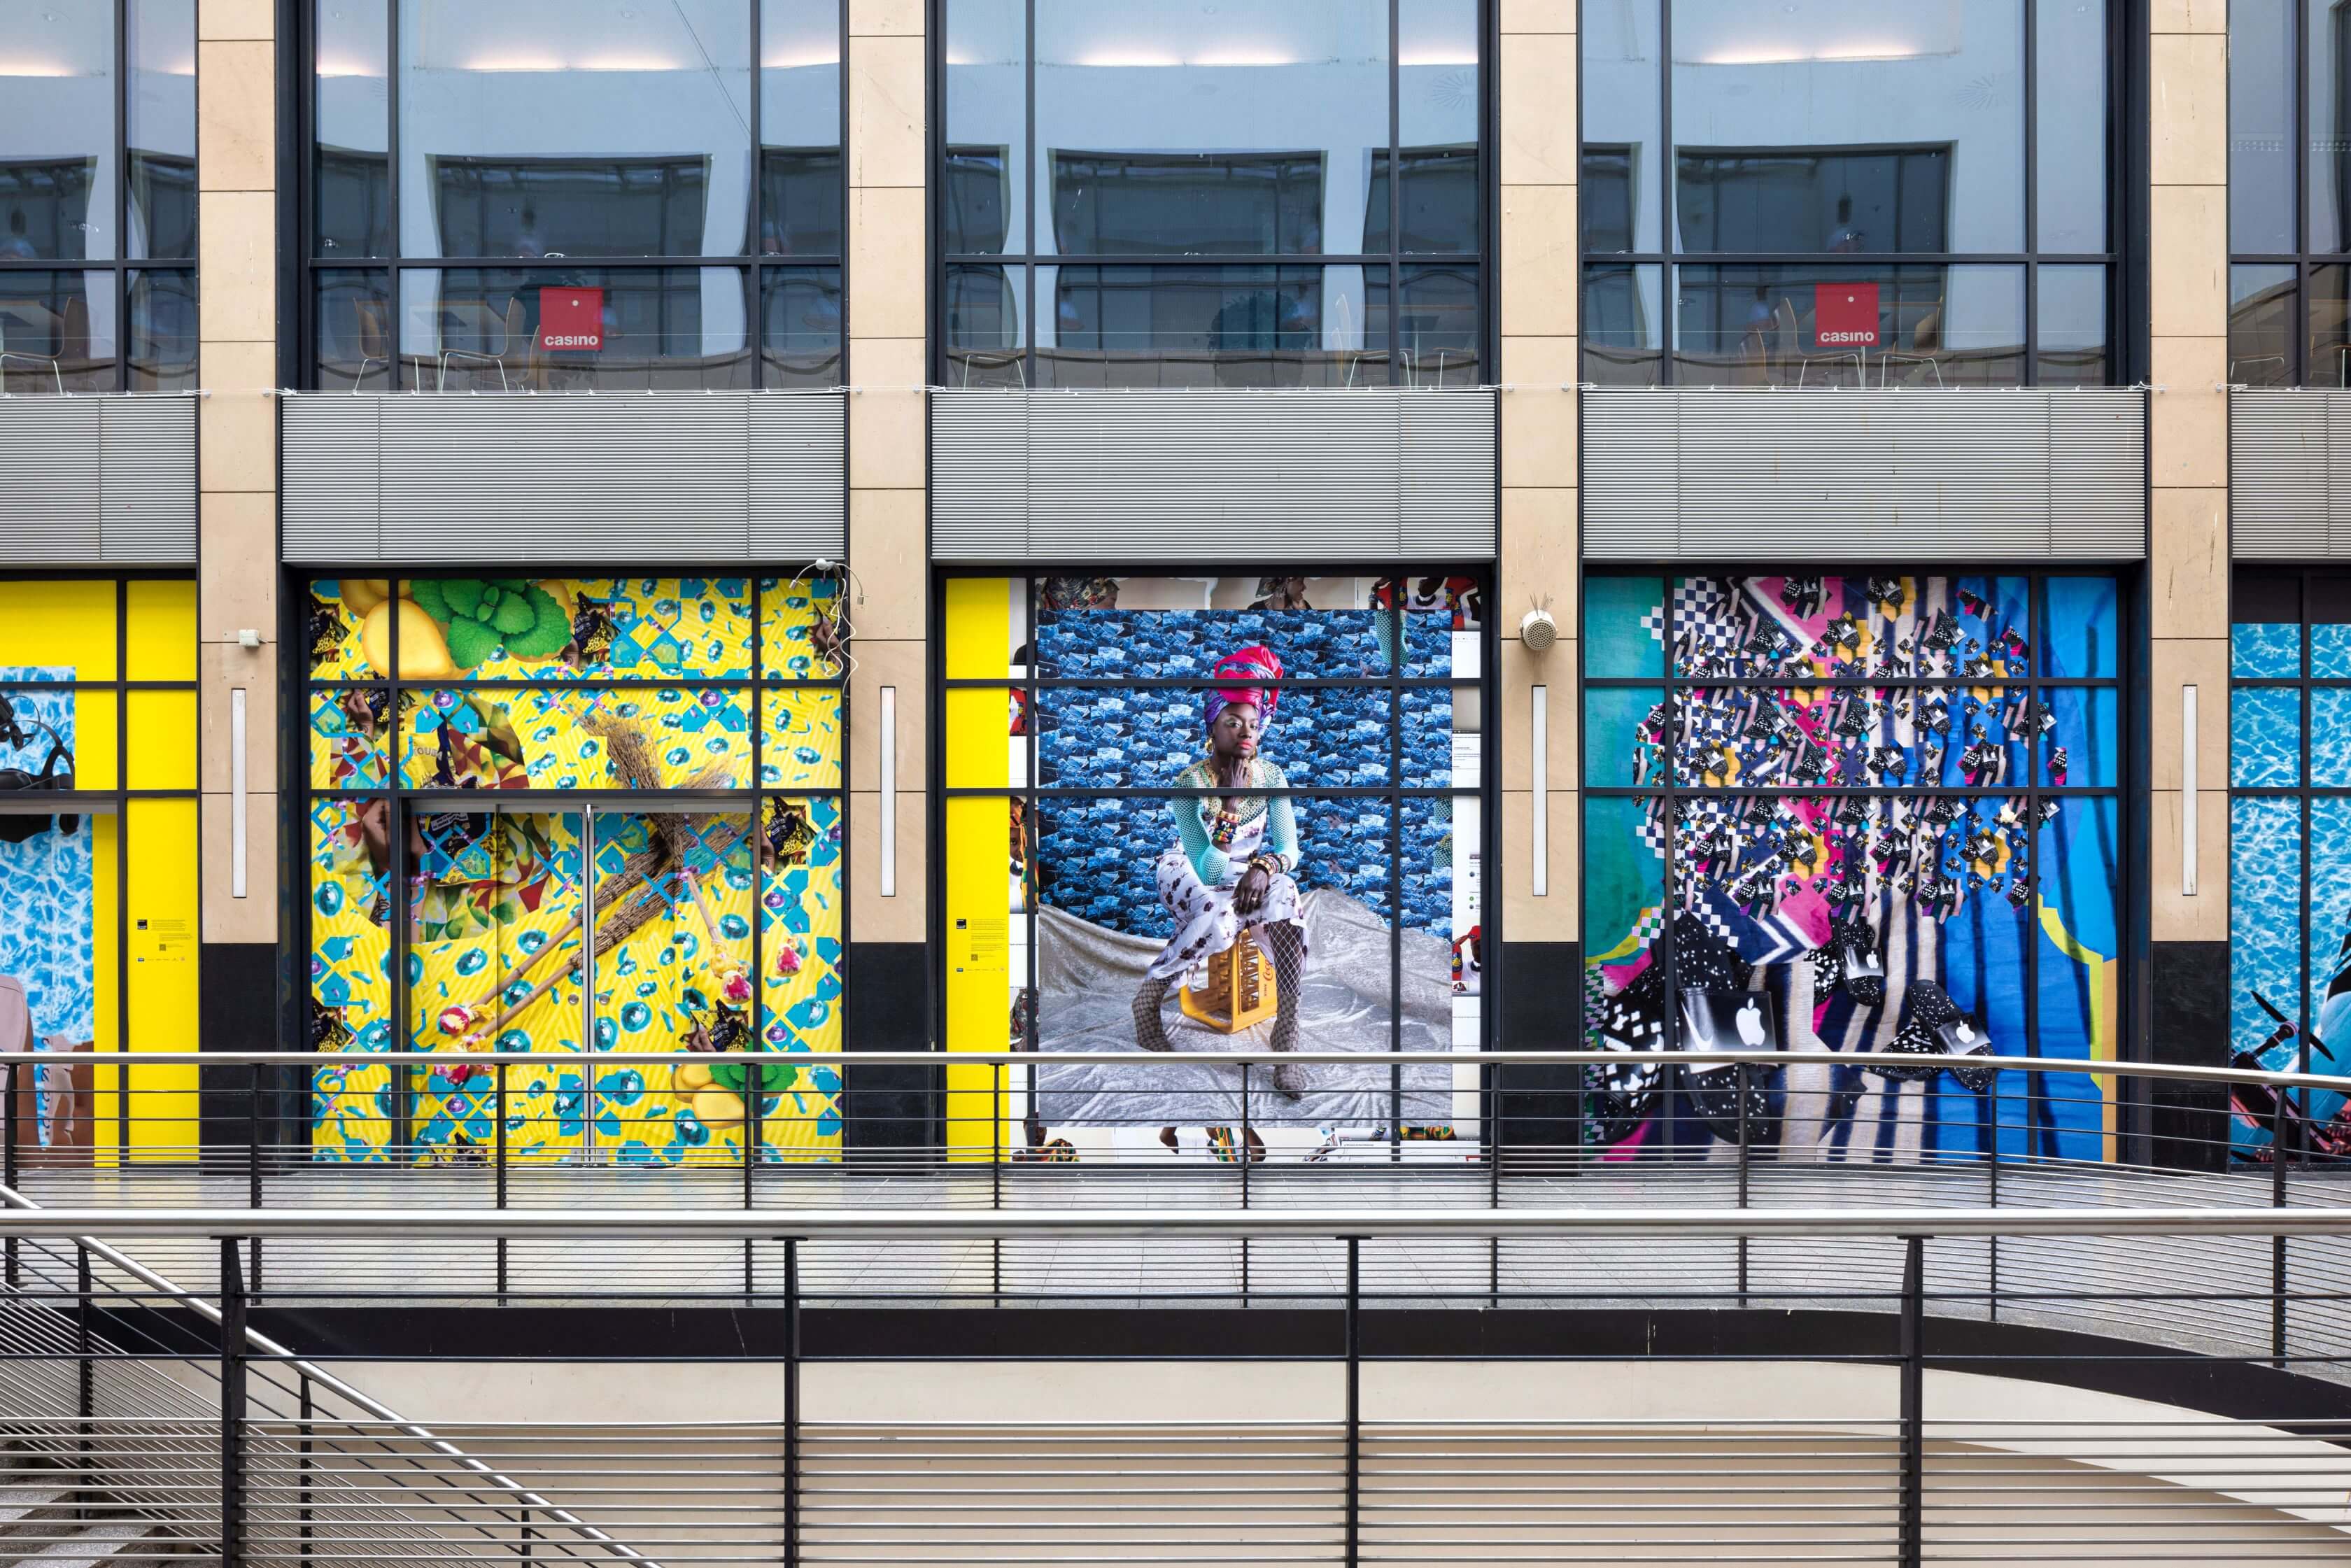 Die Fotografie zeigt einen Ausschnitt des Mannheimer Hauptbahnhofs mit drei digitalen Collagen aus der Serie Tools for Conviviality. Die Collage in der Mitte zeigt das Portrait von Awa, die in einer selbstbewussten Pose auf einer gelben Coca-Cola-Kiste sitzt. Links und rechts von ihr sind weitere bunte Collagen mit verschiedenen sich wiederholenden Mustern zu sehen